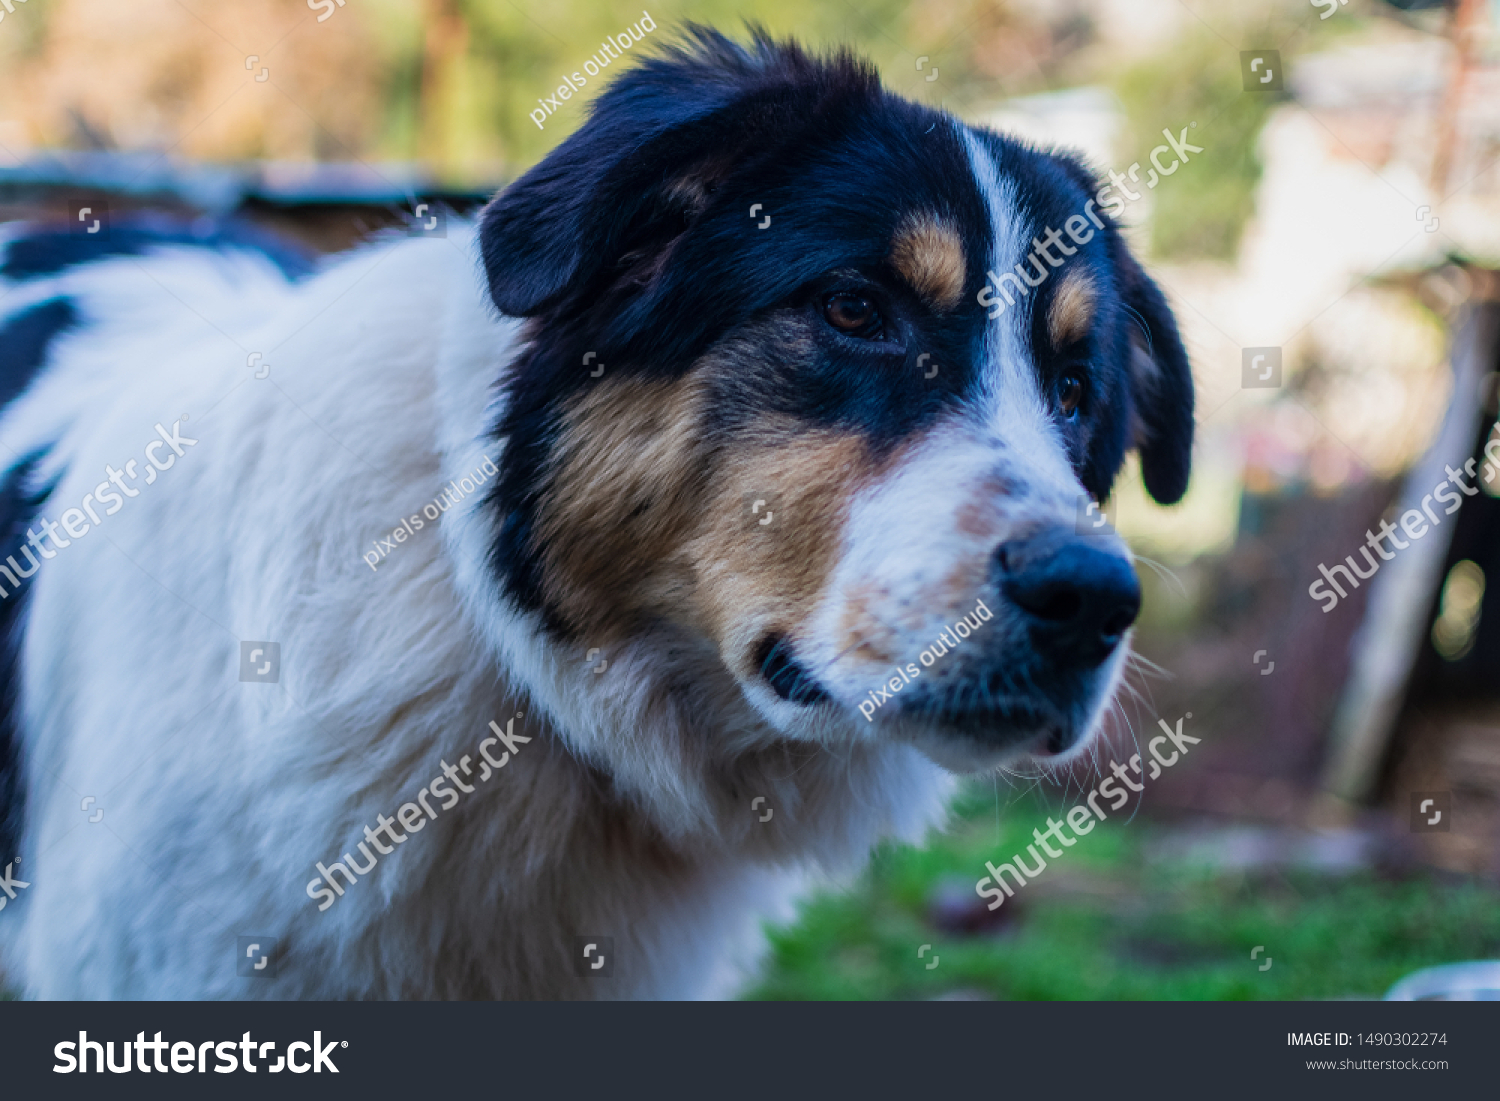 greek shepherd dog